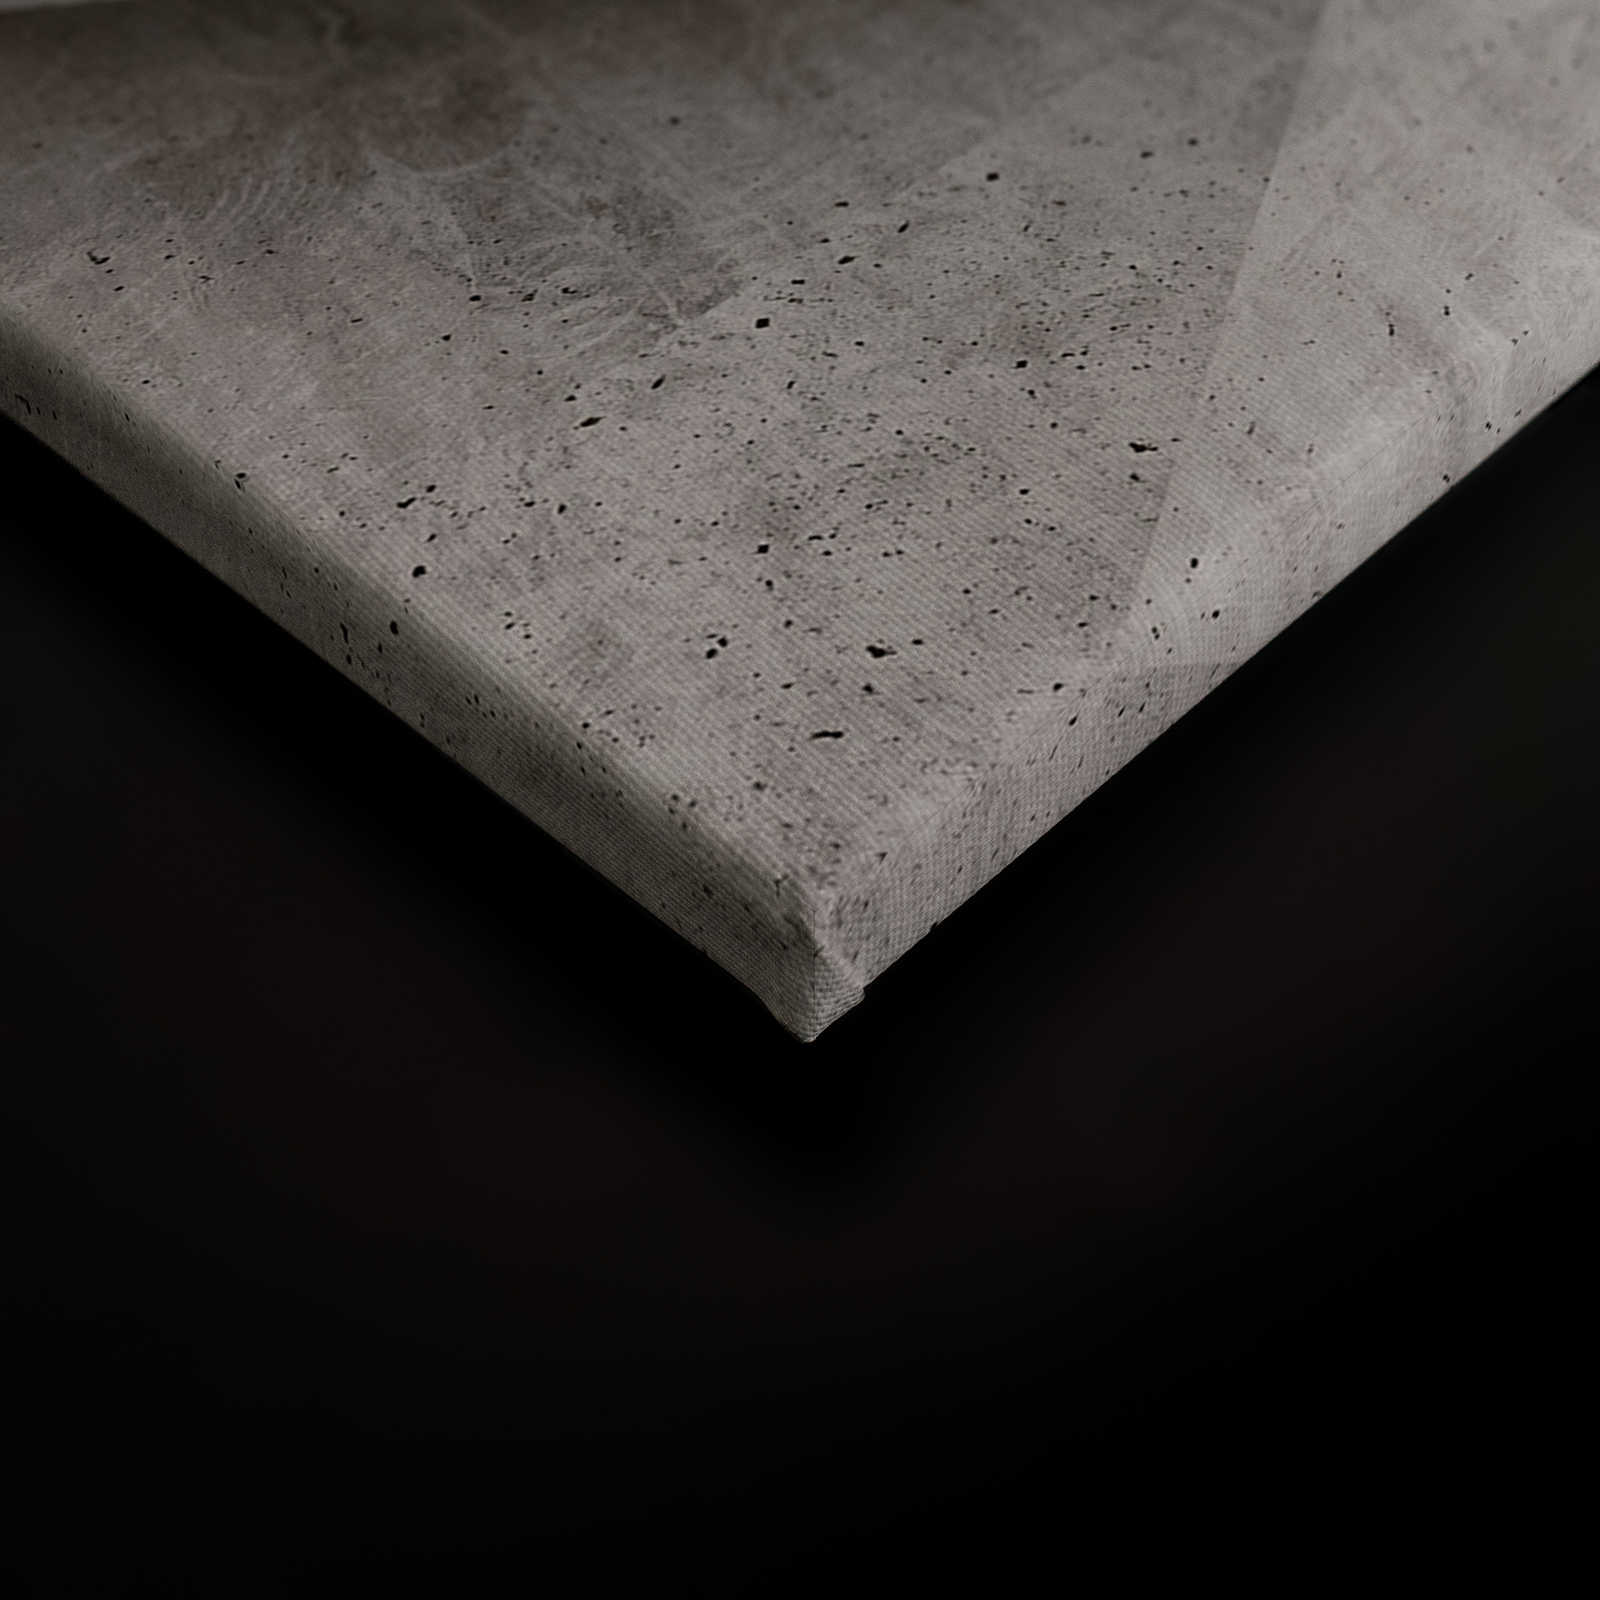             Boulder 1 - Cool 3D Concrete Polygons Canvas Painting - 1.20 m x 0.80 m
        